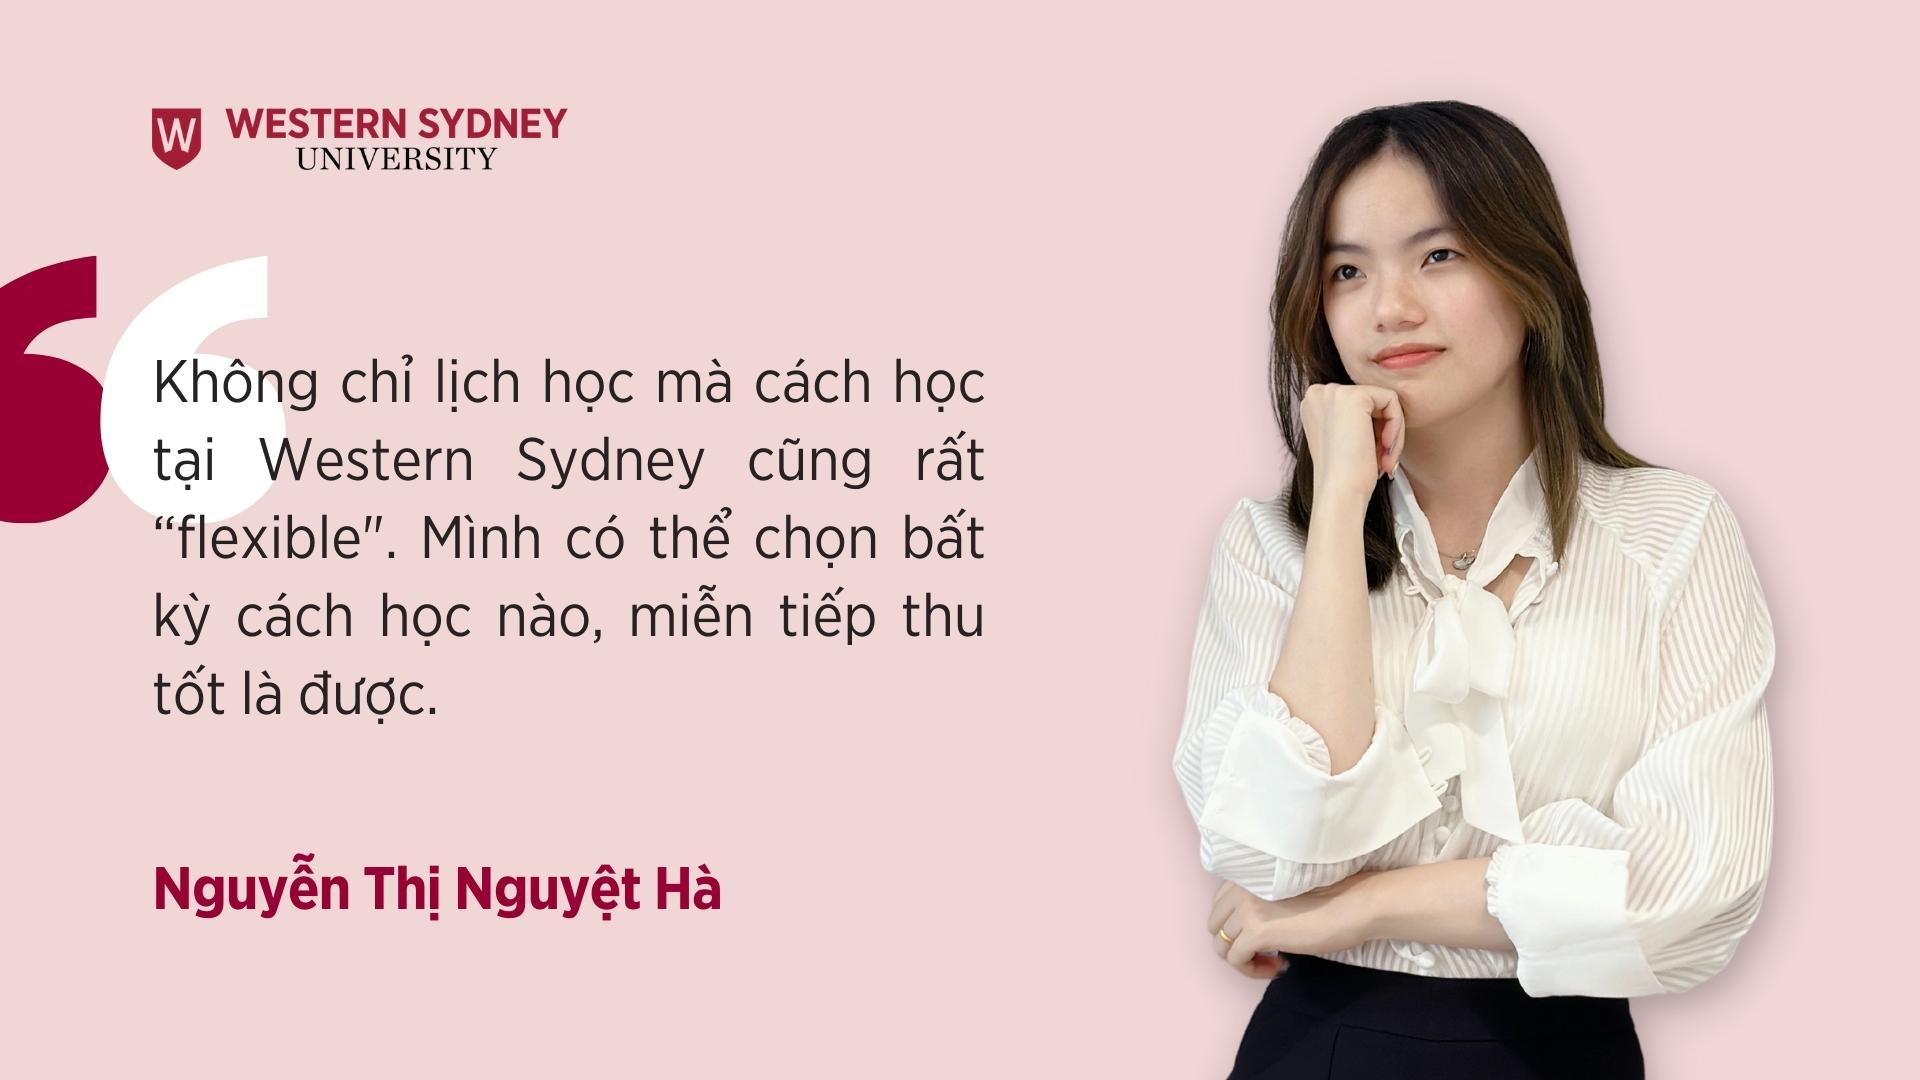 Môi trường học tập cở mở là một điểm mà Hà rất thích khi học tập tại Western Sydney Việt Nam